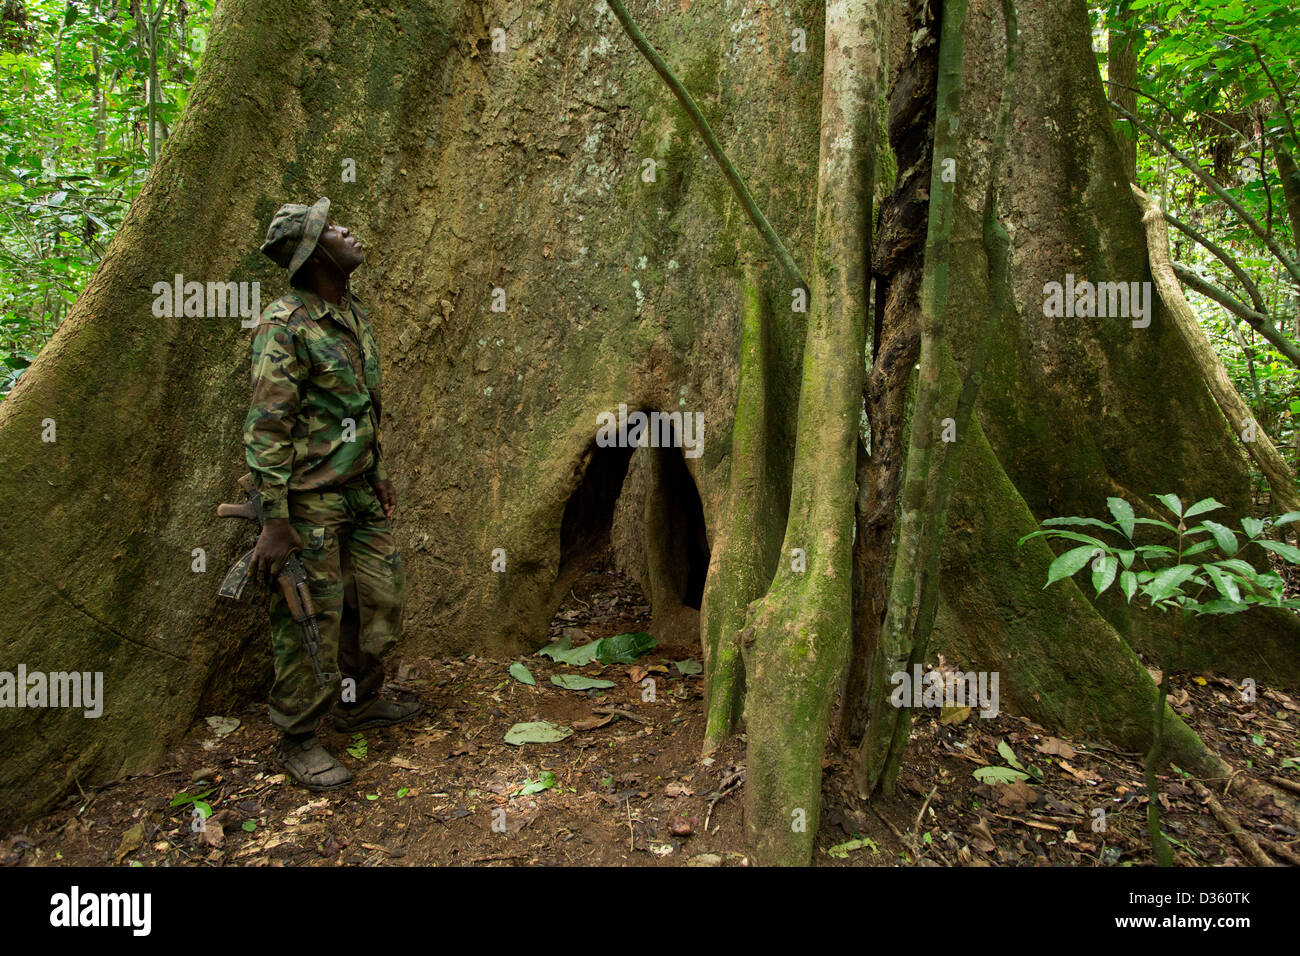 Kongo, 29. September 2012: eine Bi-nationale Gruppe von Ecoguards aus Kamerun und Gabun Patrouille auf der Suche nach Beweisen für Wildtiere Wilderei. Stockfoto